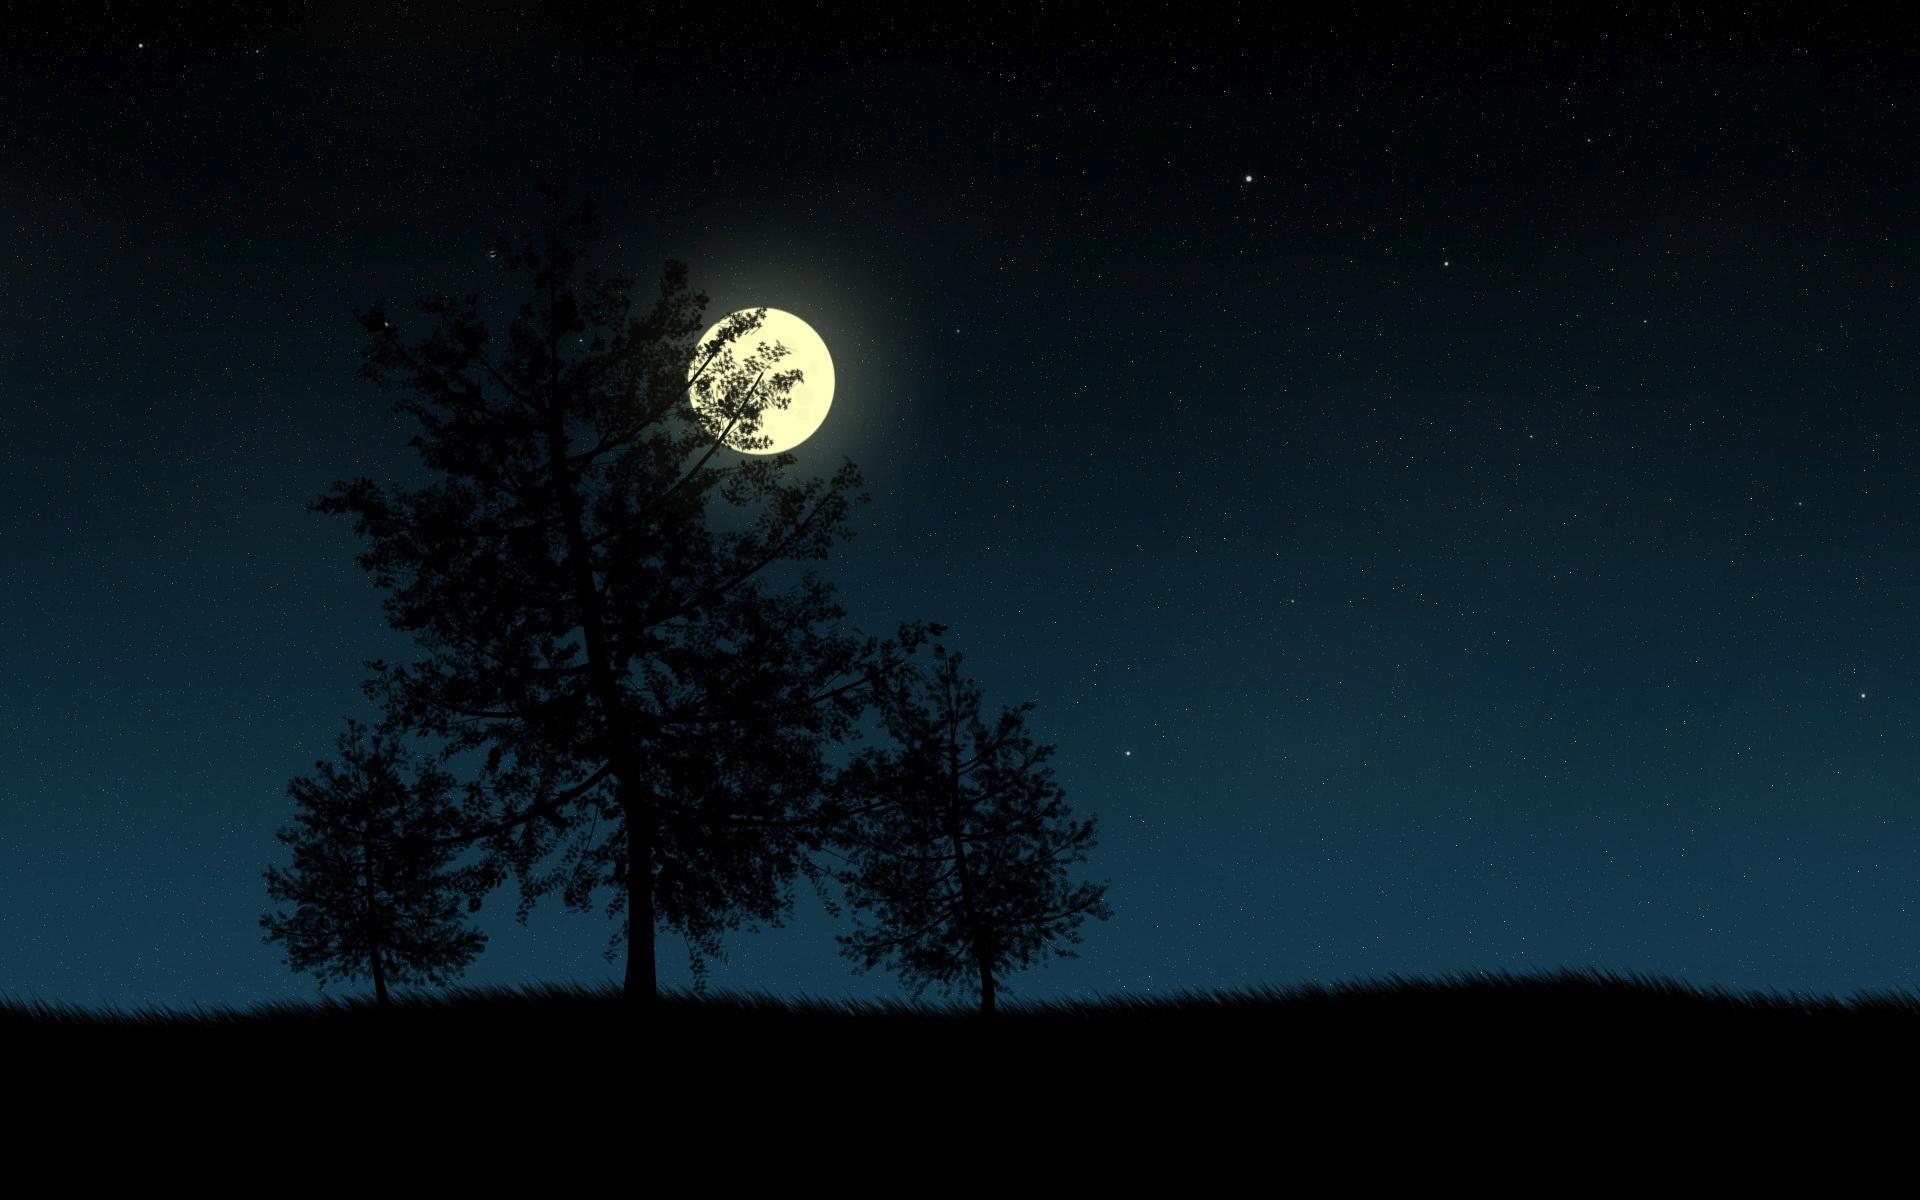 مجموعه تصاویر شب و ماه و ستاره با کیفیت hd